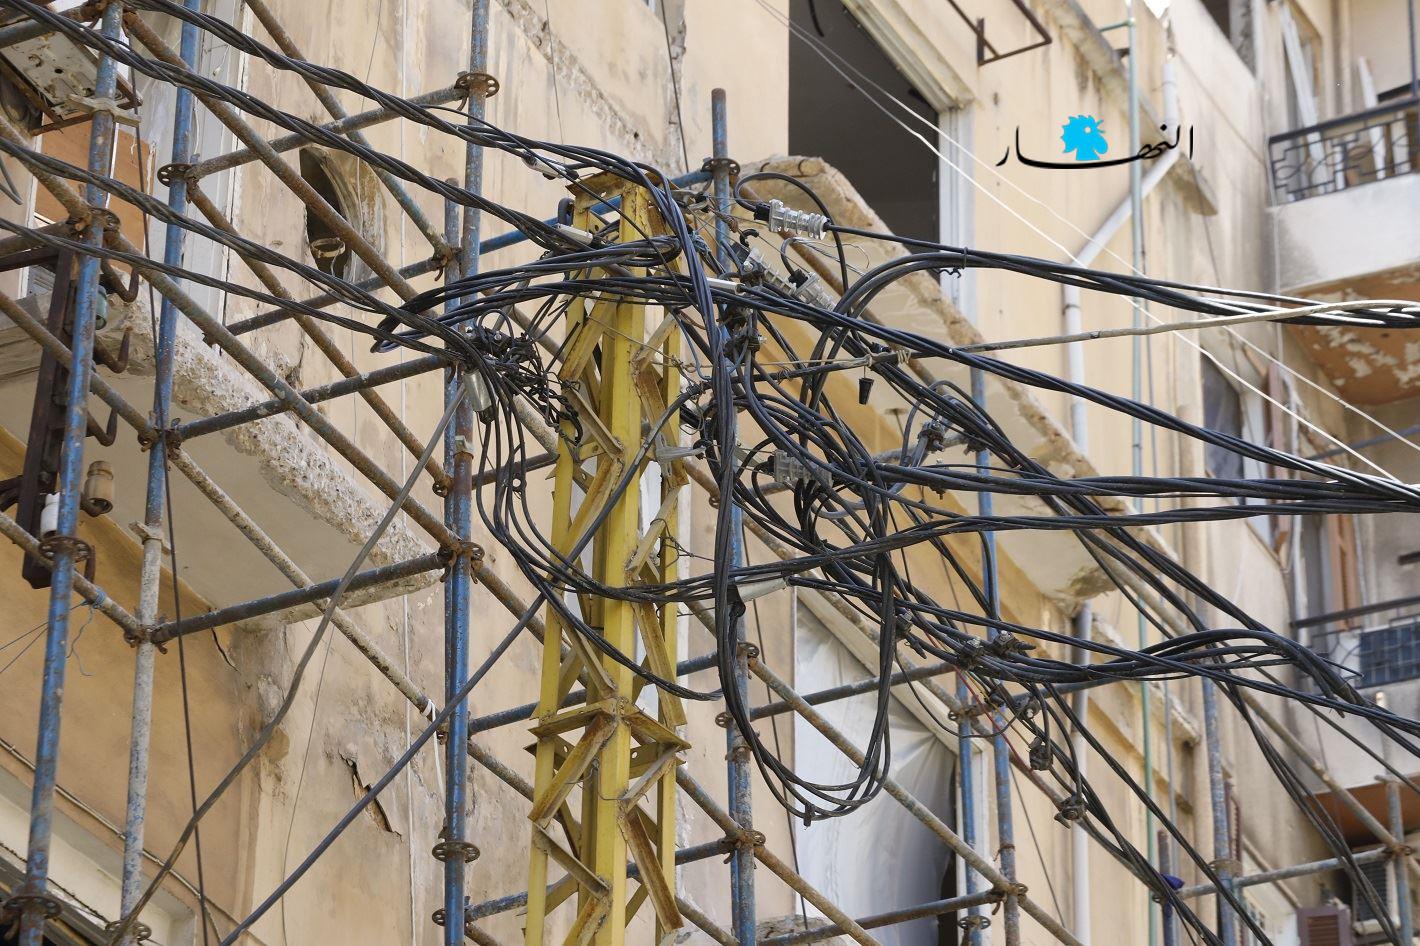 أعمدة الكهرباء في بيروت (تصوير مارك فياض)